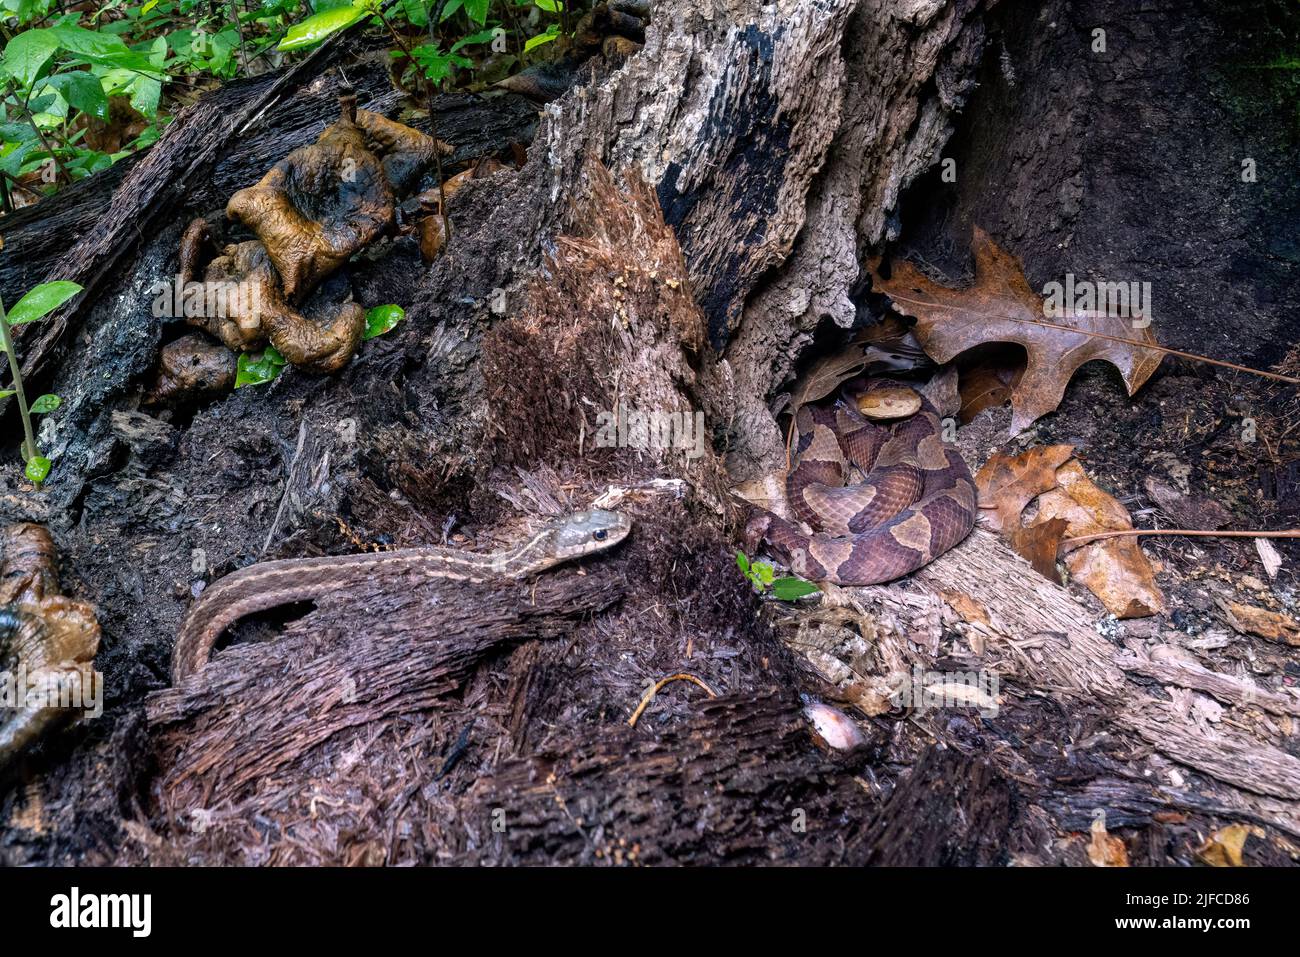 La testa di copperone orientale (Agkistrodon contortrix) si avvolse in un ceppo di albero mentre un serpente di garter orientale ignoziente (Thamnophis sirtalis sirtalis) si avvicina Foto Stock